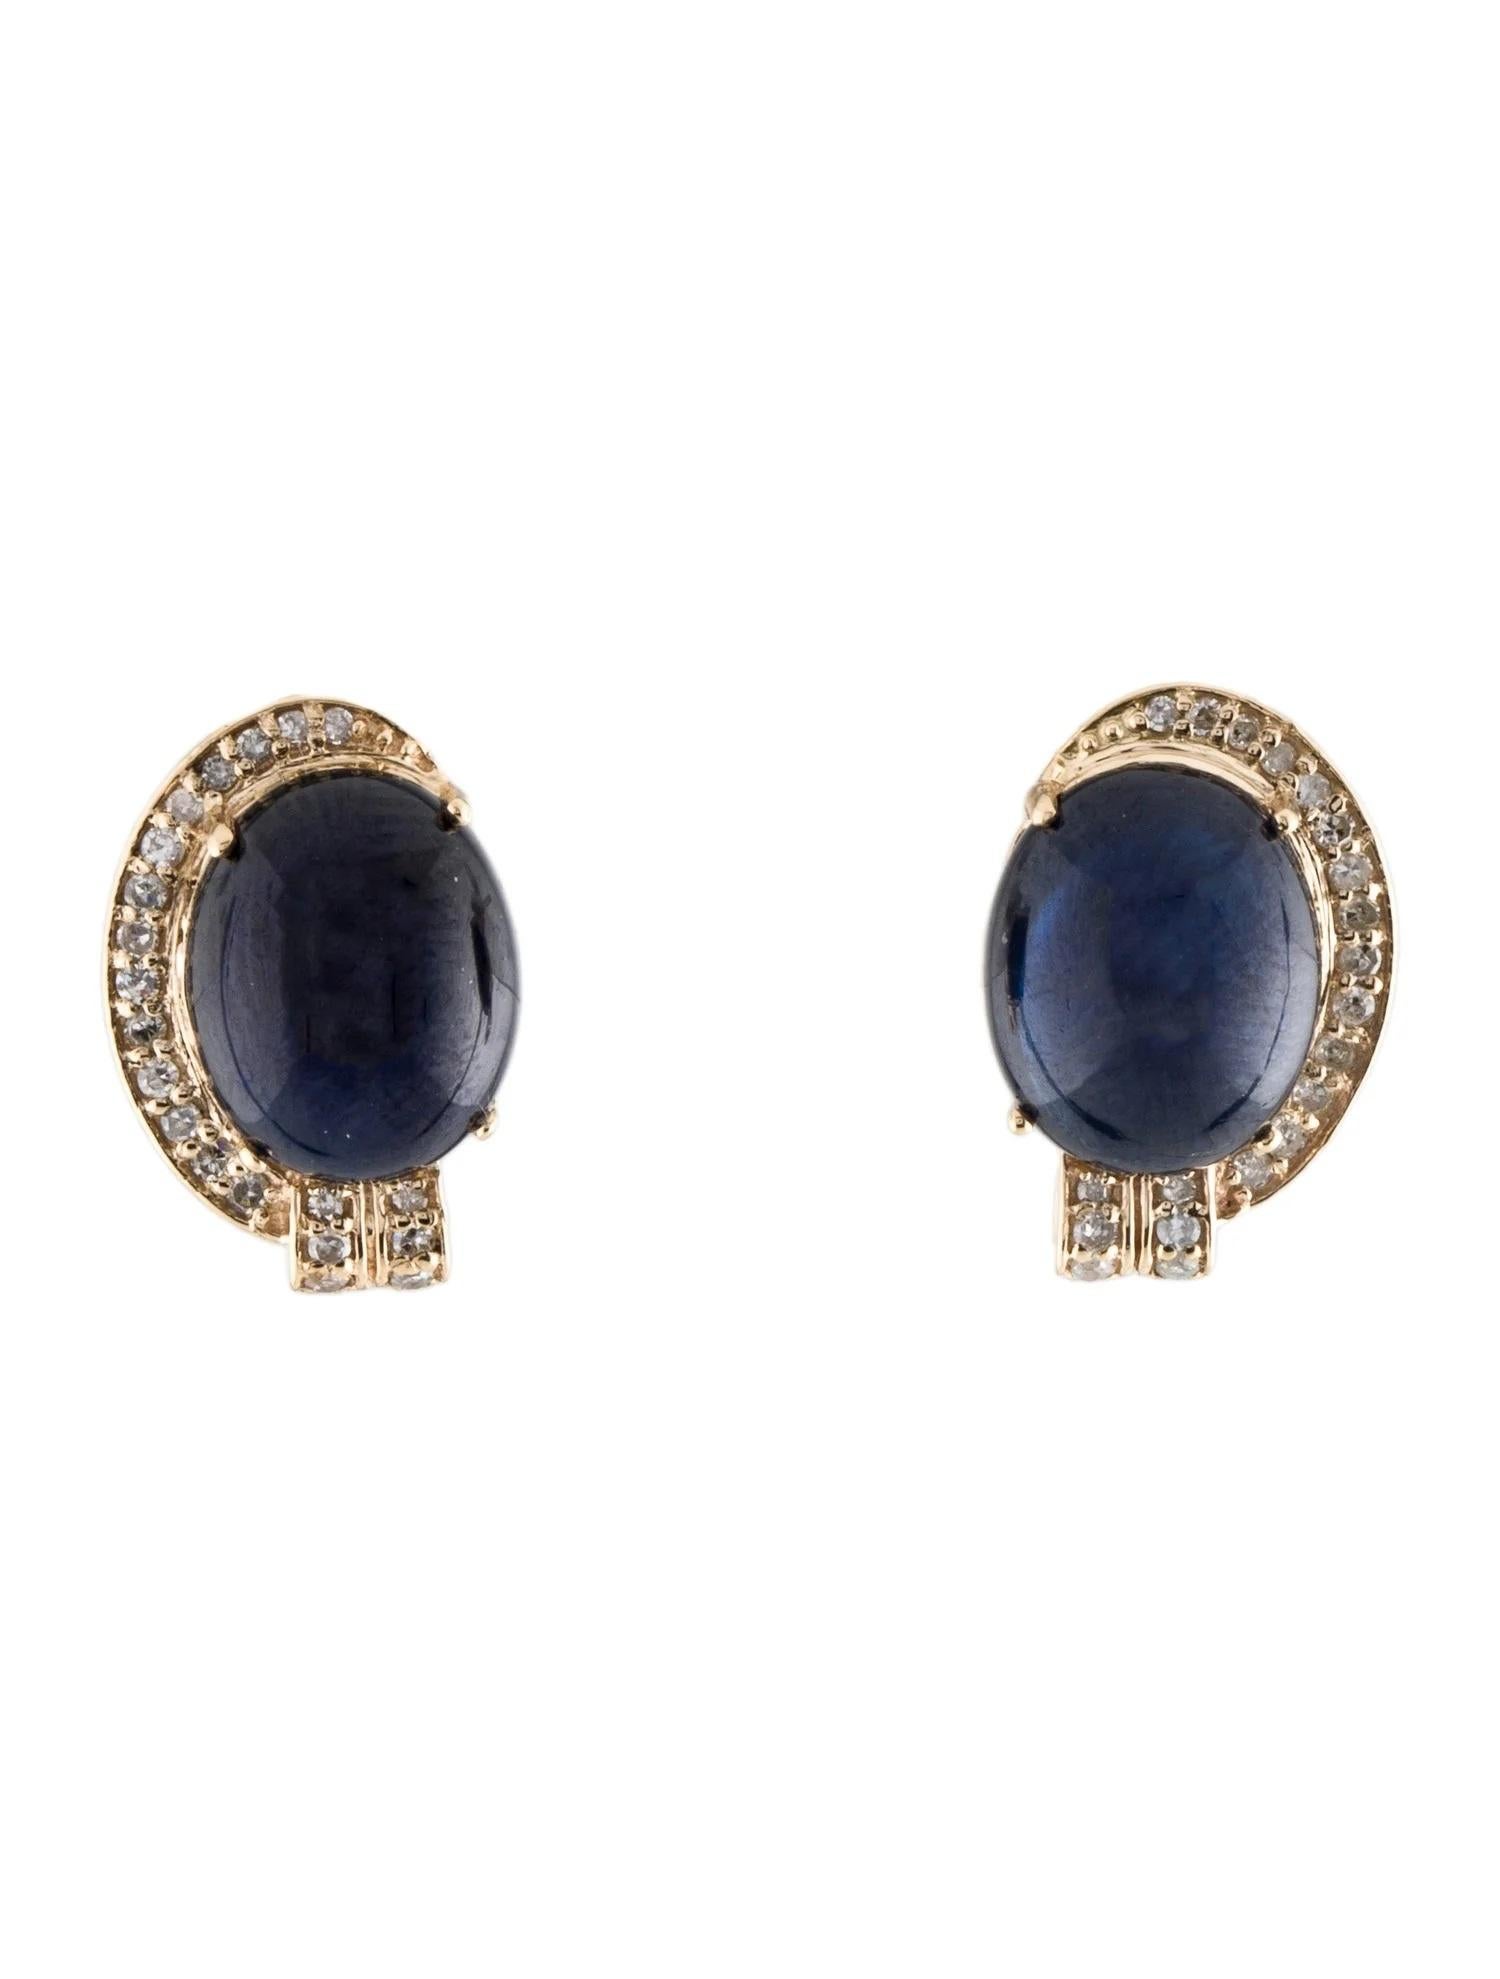 Oval Cut 14K Sapphire & Diamond Stud Earrings, 11.70ctw Oval Blue Sapphire For Sale